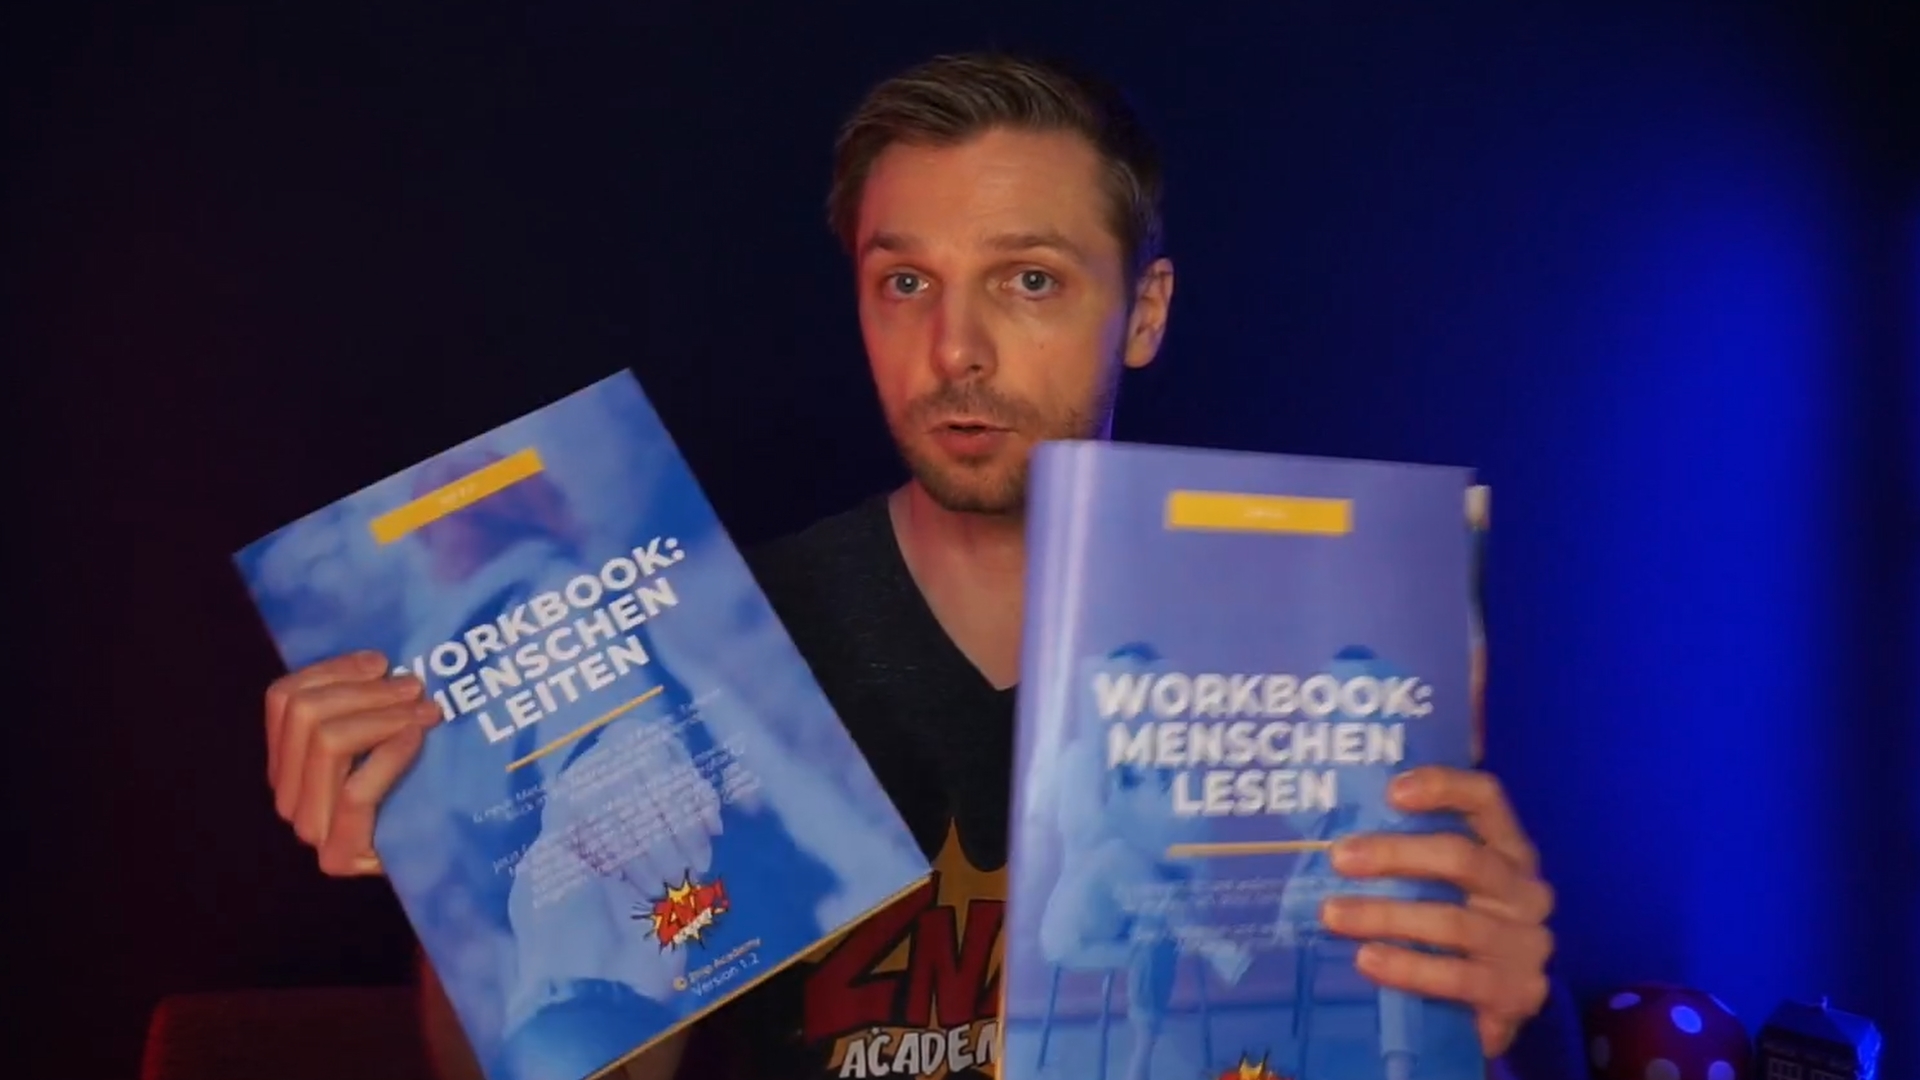 Henry präsentiert die Menschen lesen Workbooks